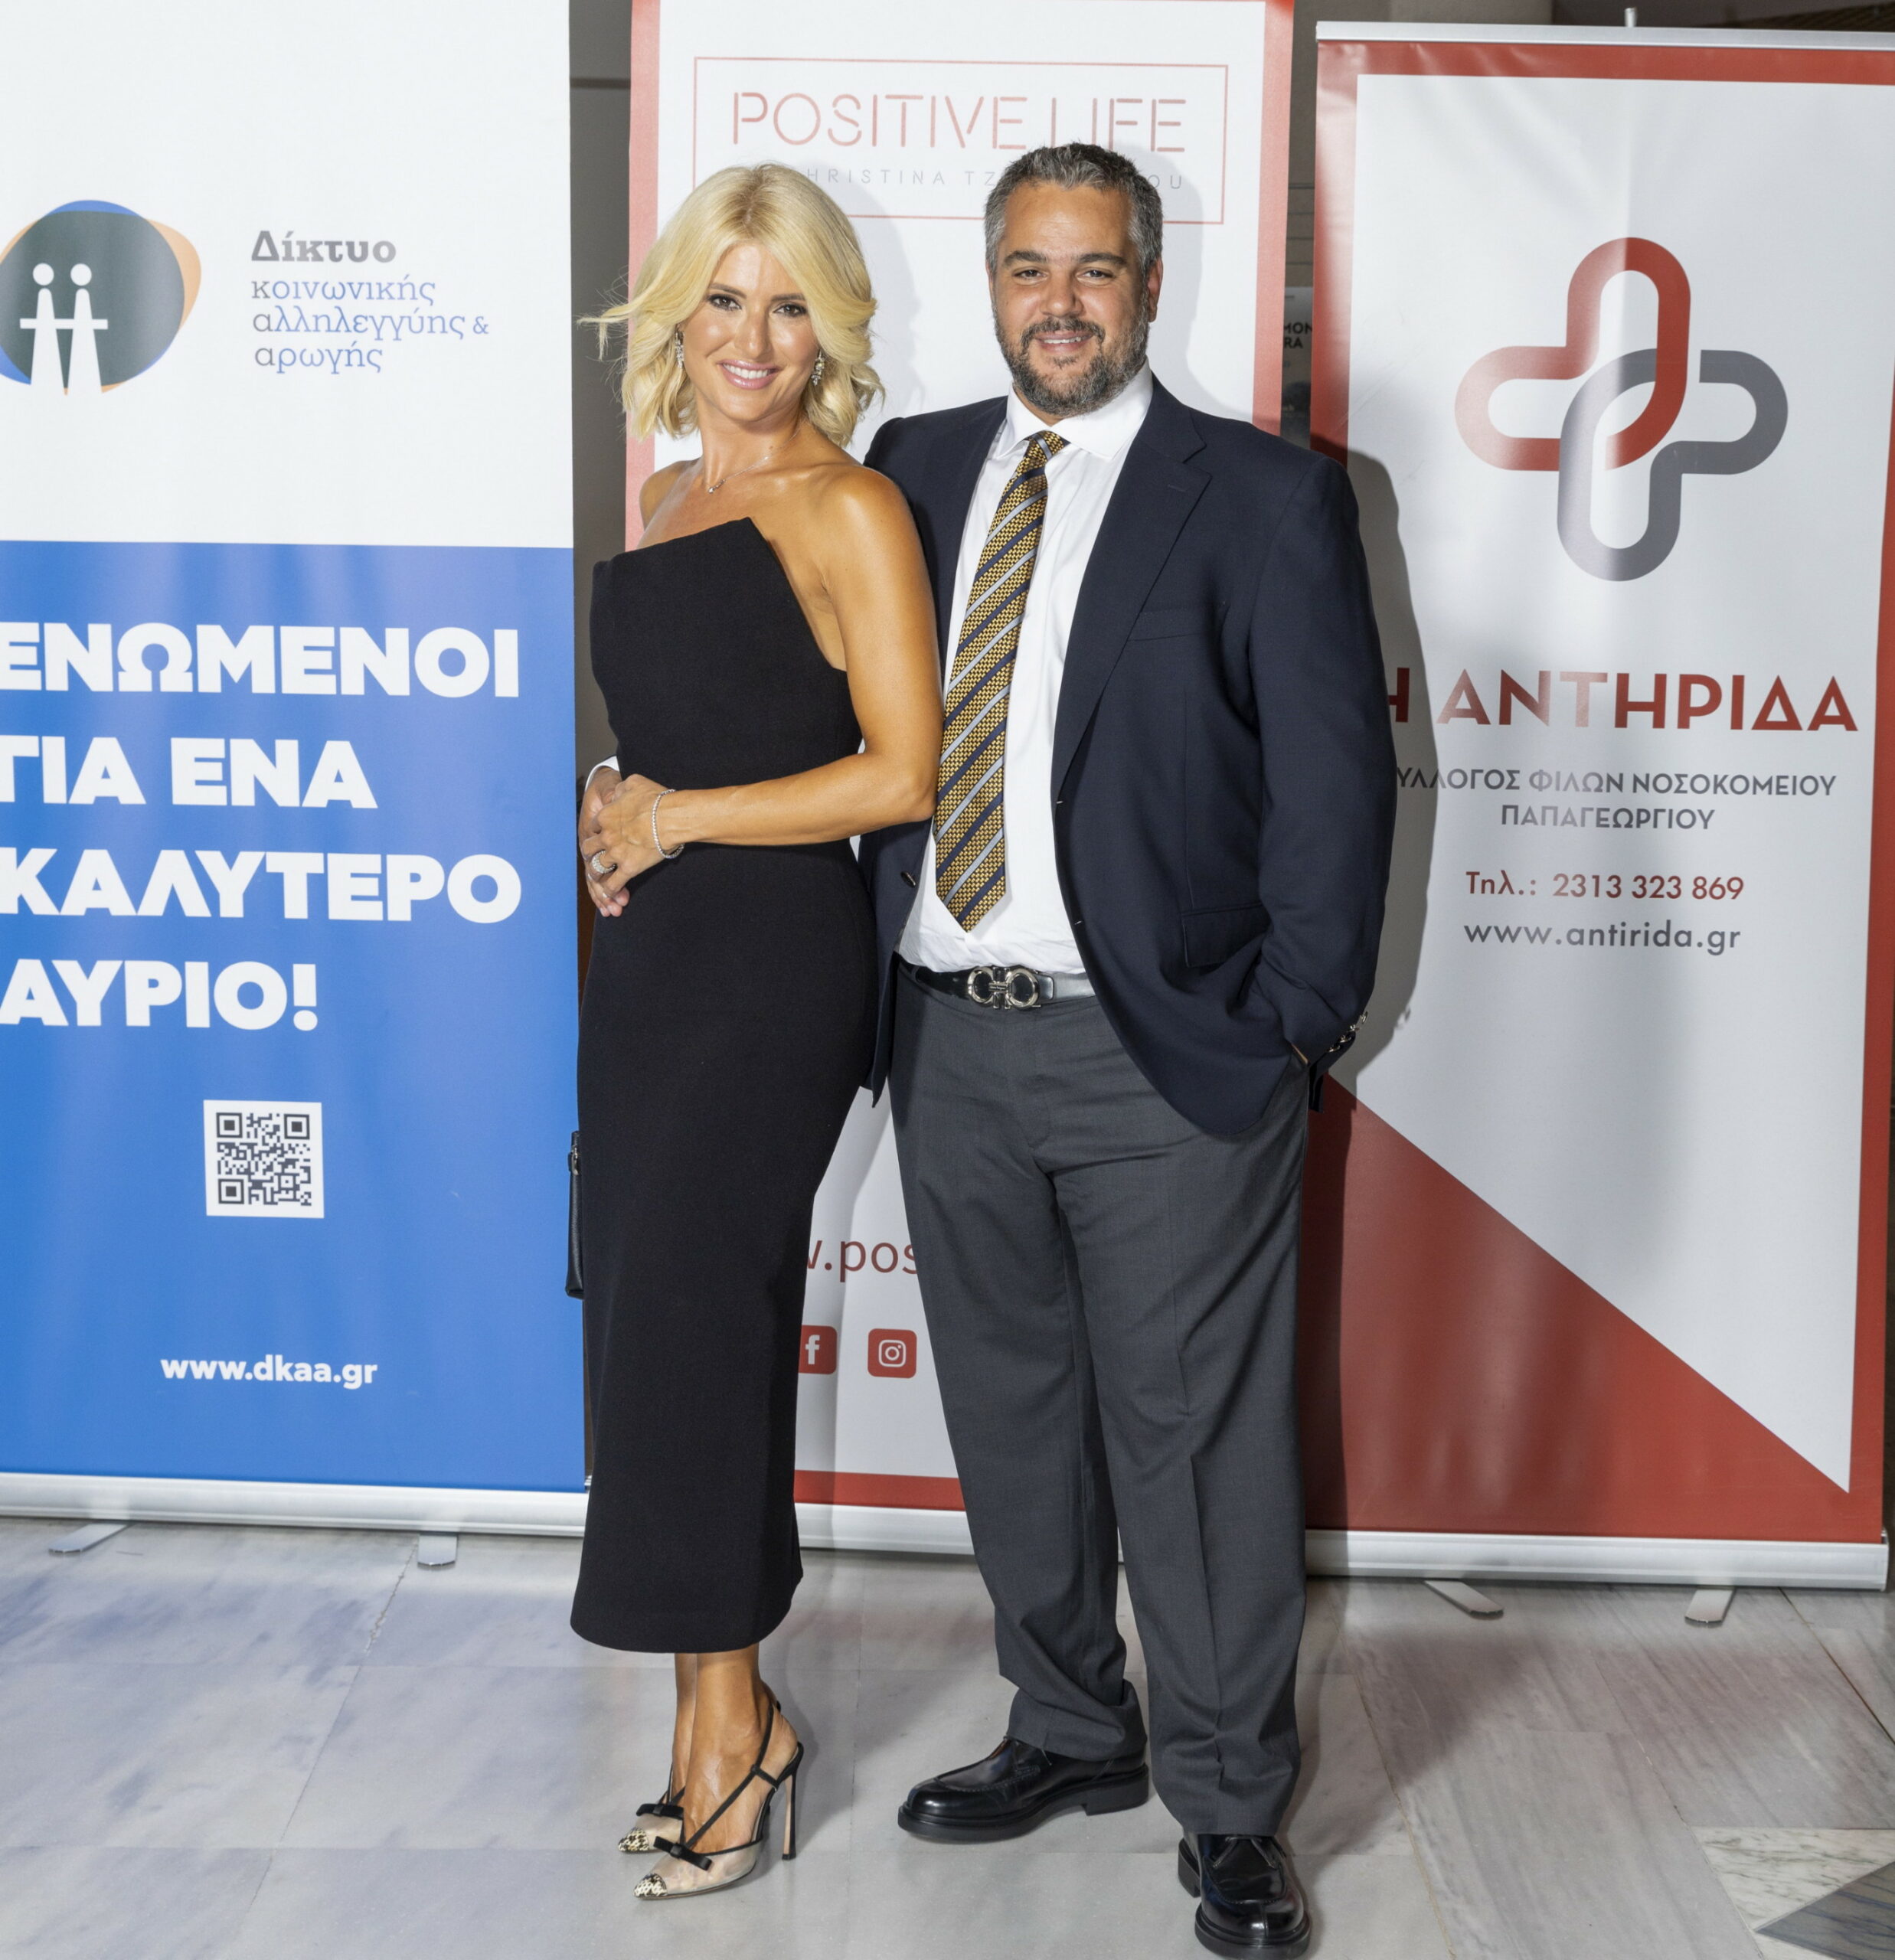 Ο Φίλιππος Αλεξίδης με τη σύζυγό του Έλενα της «Eurogenetica - Ιατρικό Κέντρο Ανάλυσης Γενετικού Υλικού» Platinum Χορηγό της εκδήλωσης